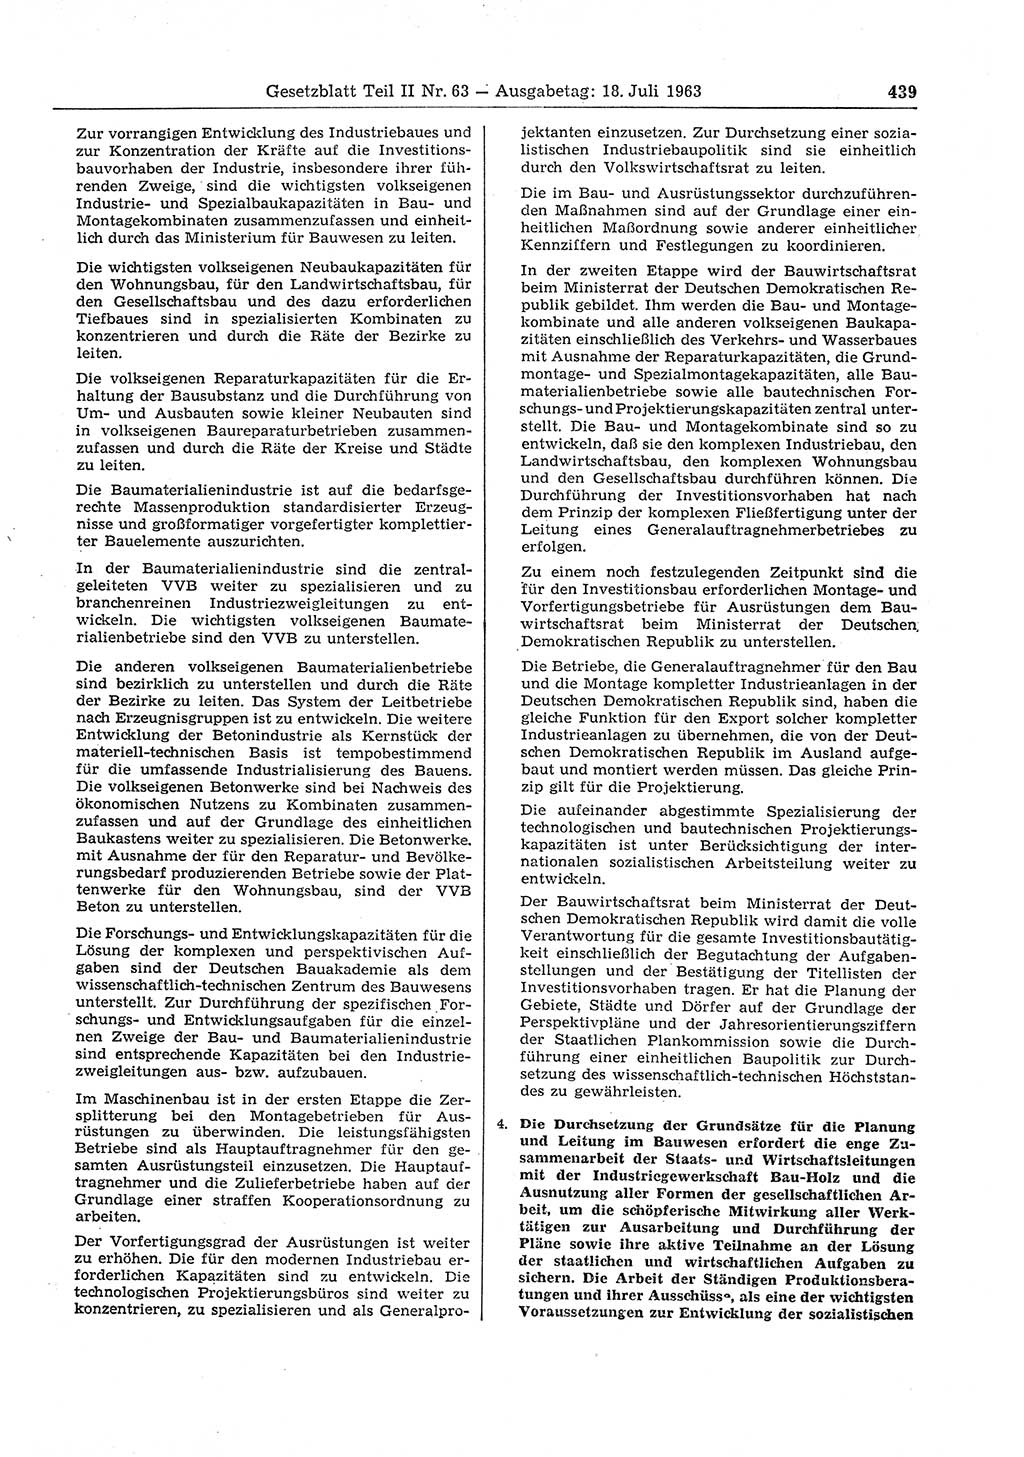 Gesetzblatt (GBl.) der Deutschen Demokratischen Republik (DDR) Teil ⅠⅠ 1963, Seite 439 (GBl. DDR ⅠⅠ 1963, S. 439)